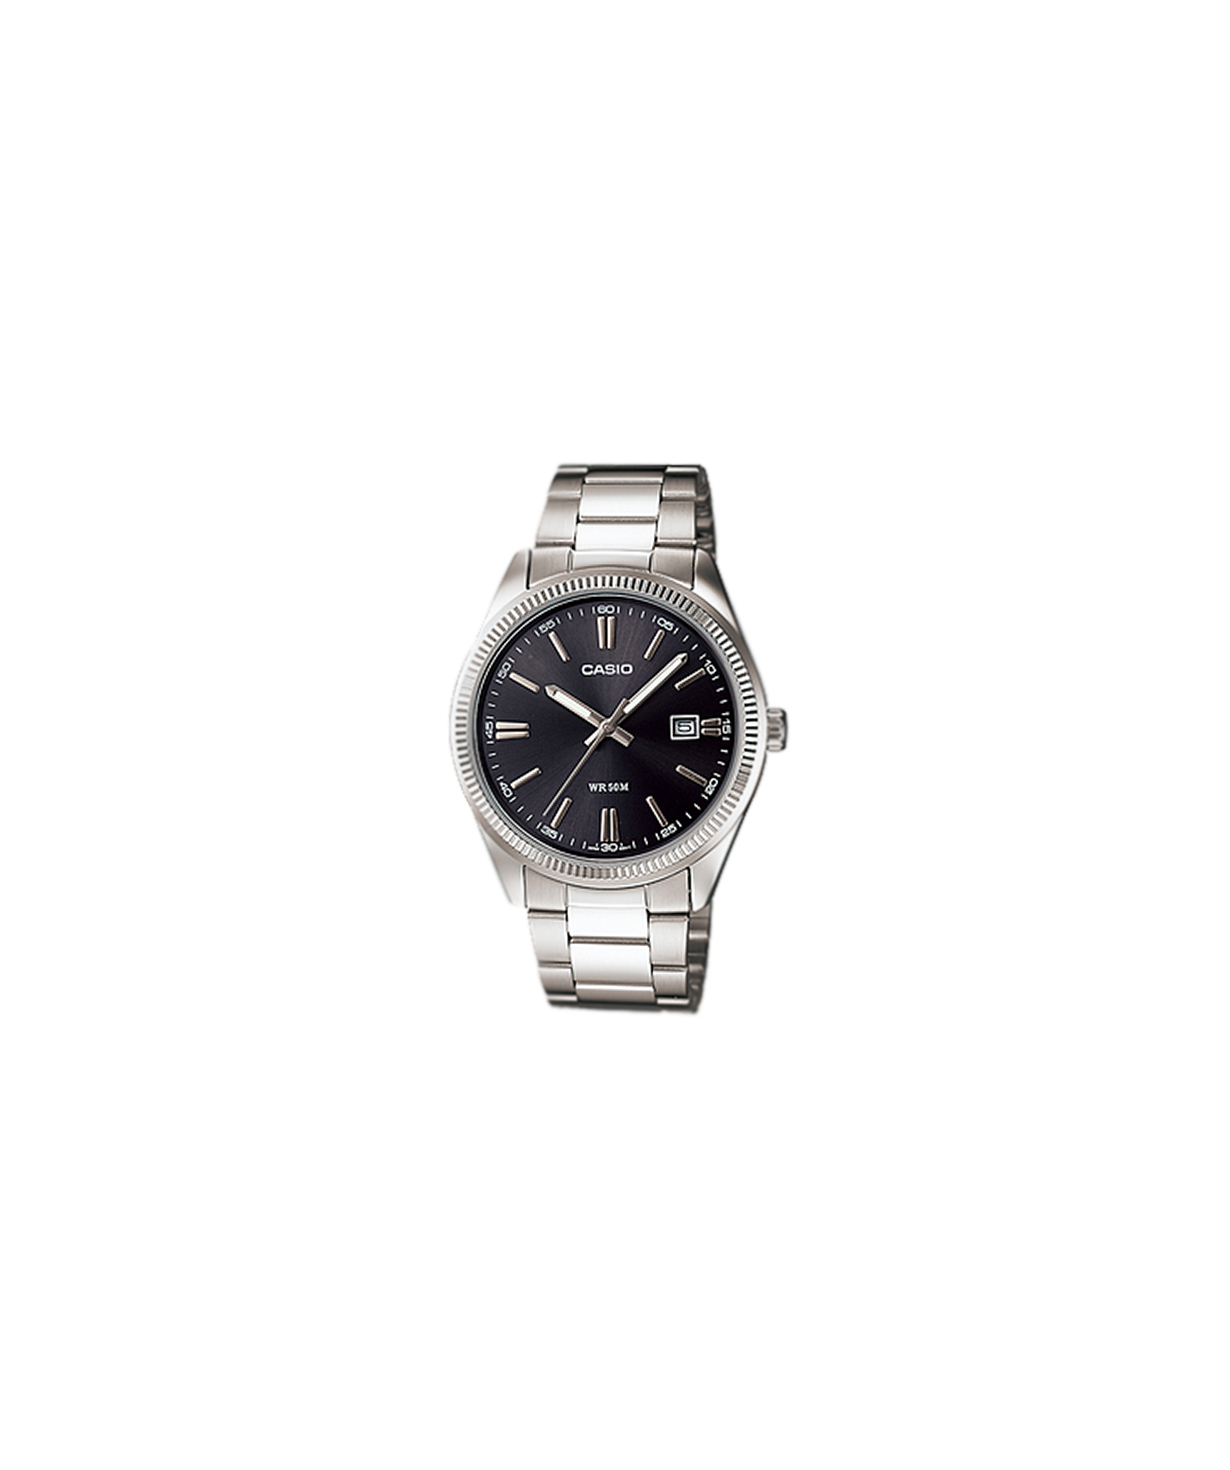 Ժամացույց  «Casio» ձեռքի  LTP-1302D-1A1VDF